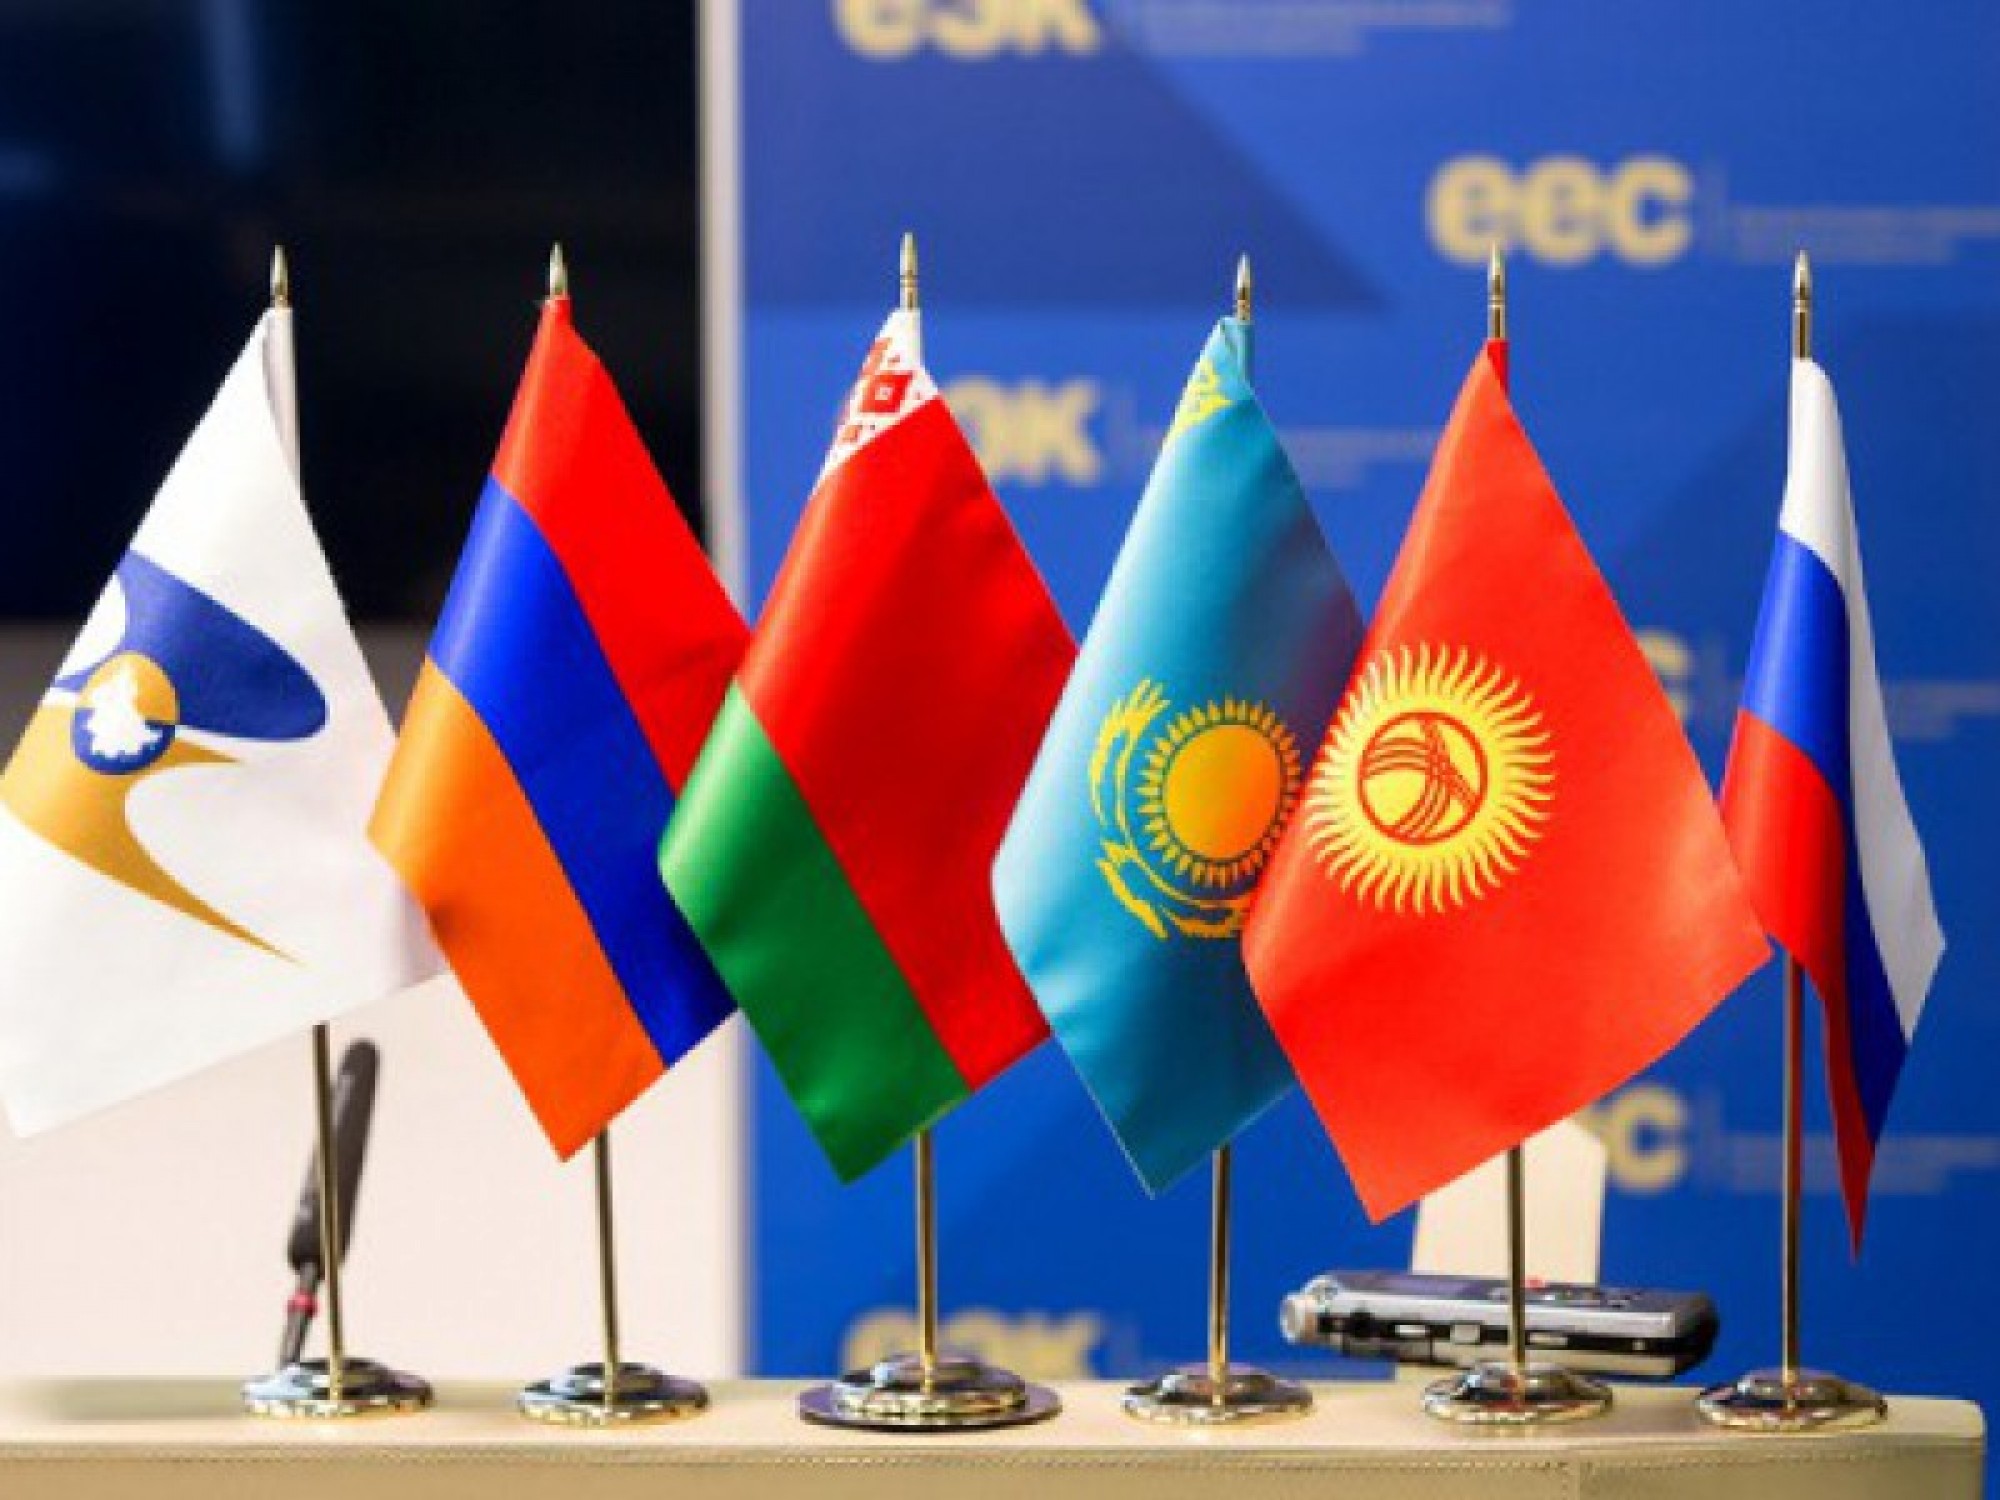 Нурсултан Назарбаев: Товарооборот между странами ЕАЭС в этом году вырос на четверть